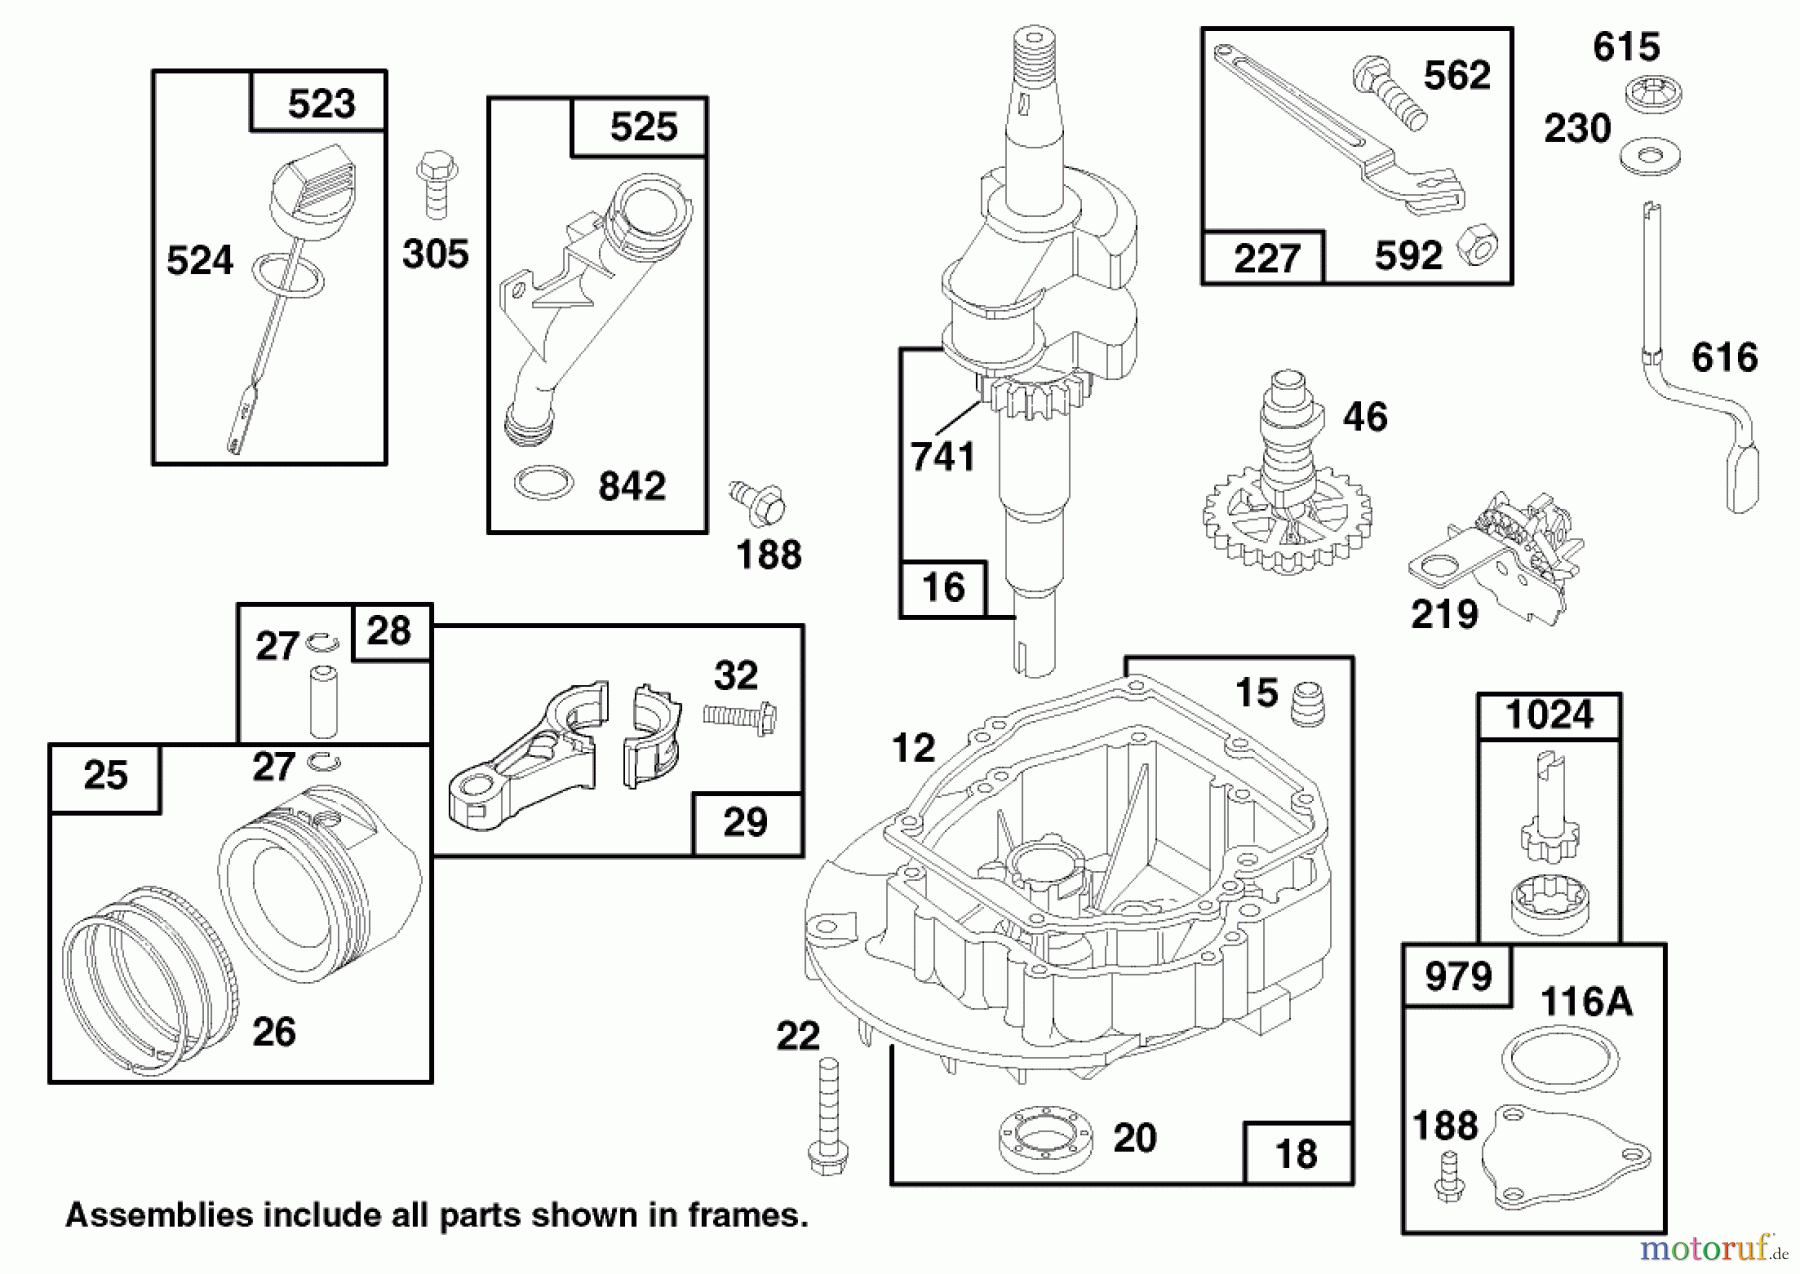  Toro Neu Mowers, Walk-Behind Seite 2 22140 - Toro Recycler Mower, 1997 (790000001-799999999) ENGINE GTS 150 #2